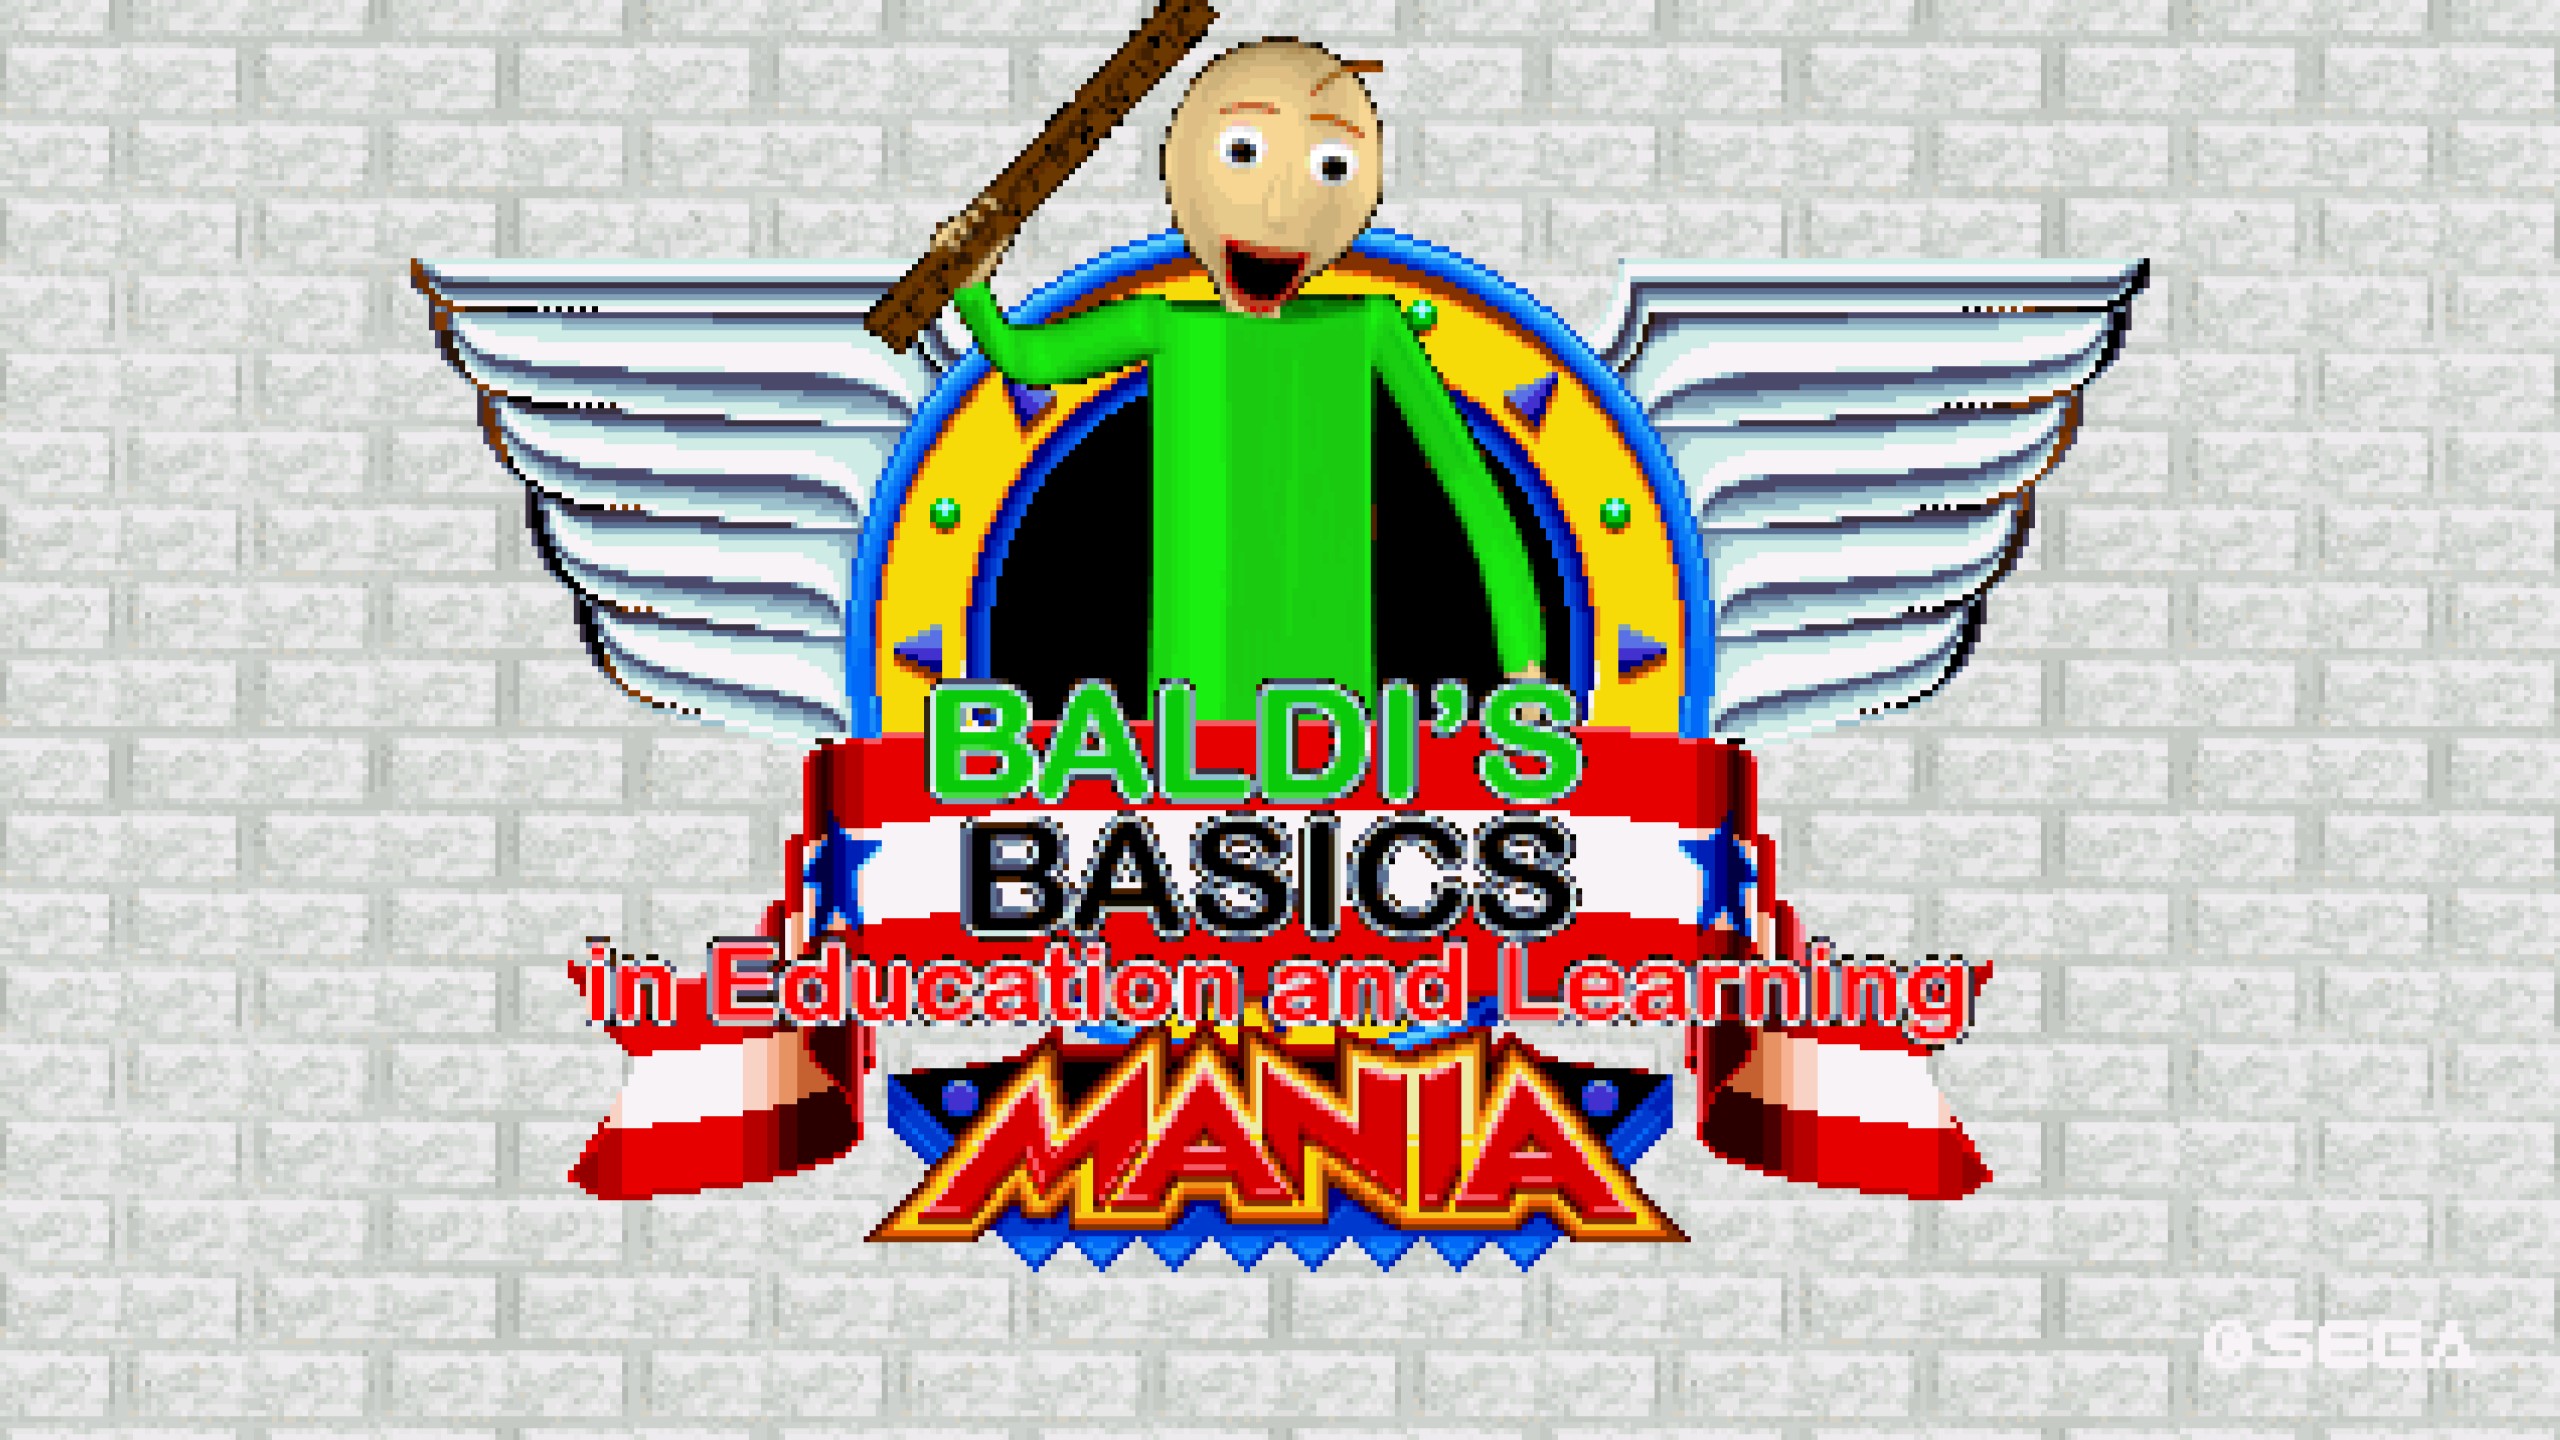 Baldi's basics Plus mobile mockups : r/BaldisBasicsEdu